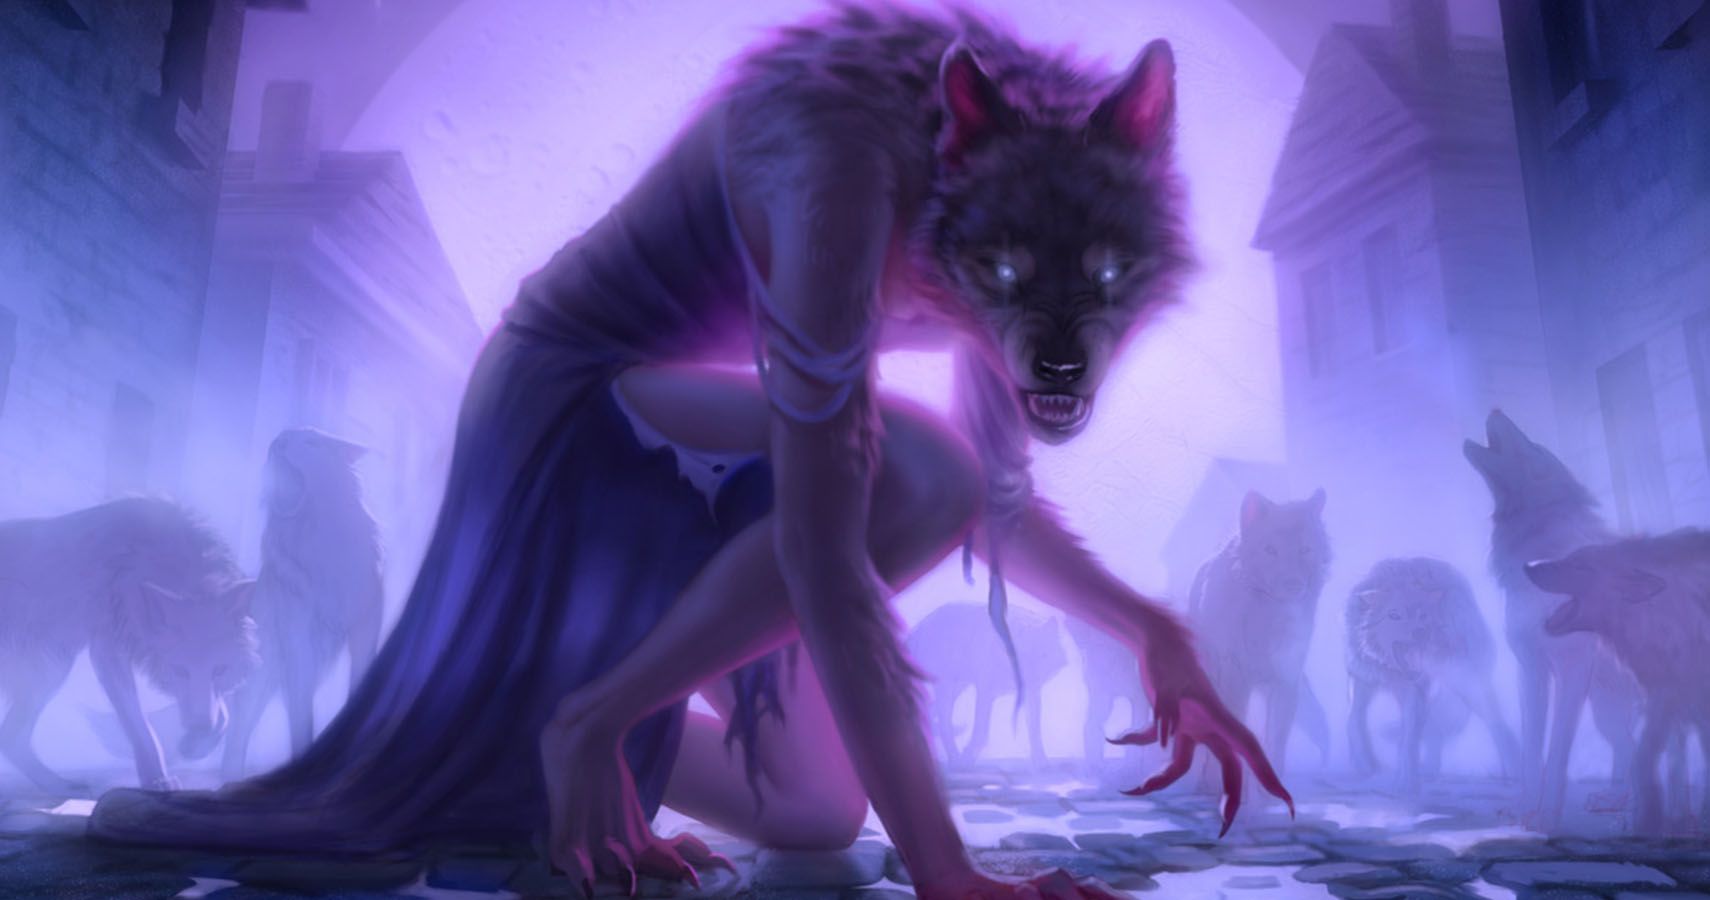 Werewolf Pack Leader by Miranda Meeks